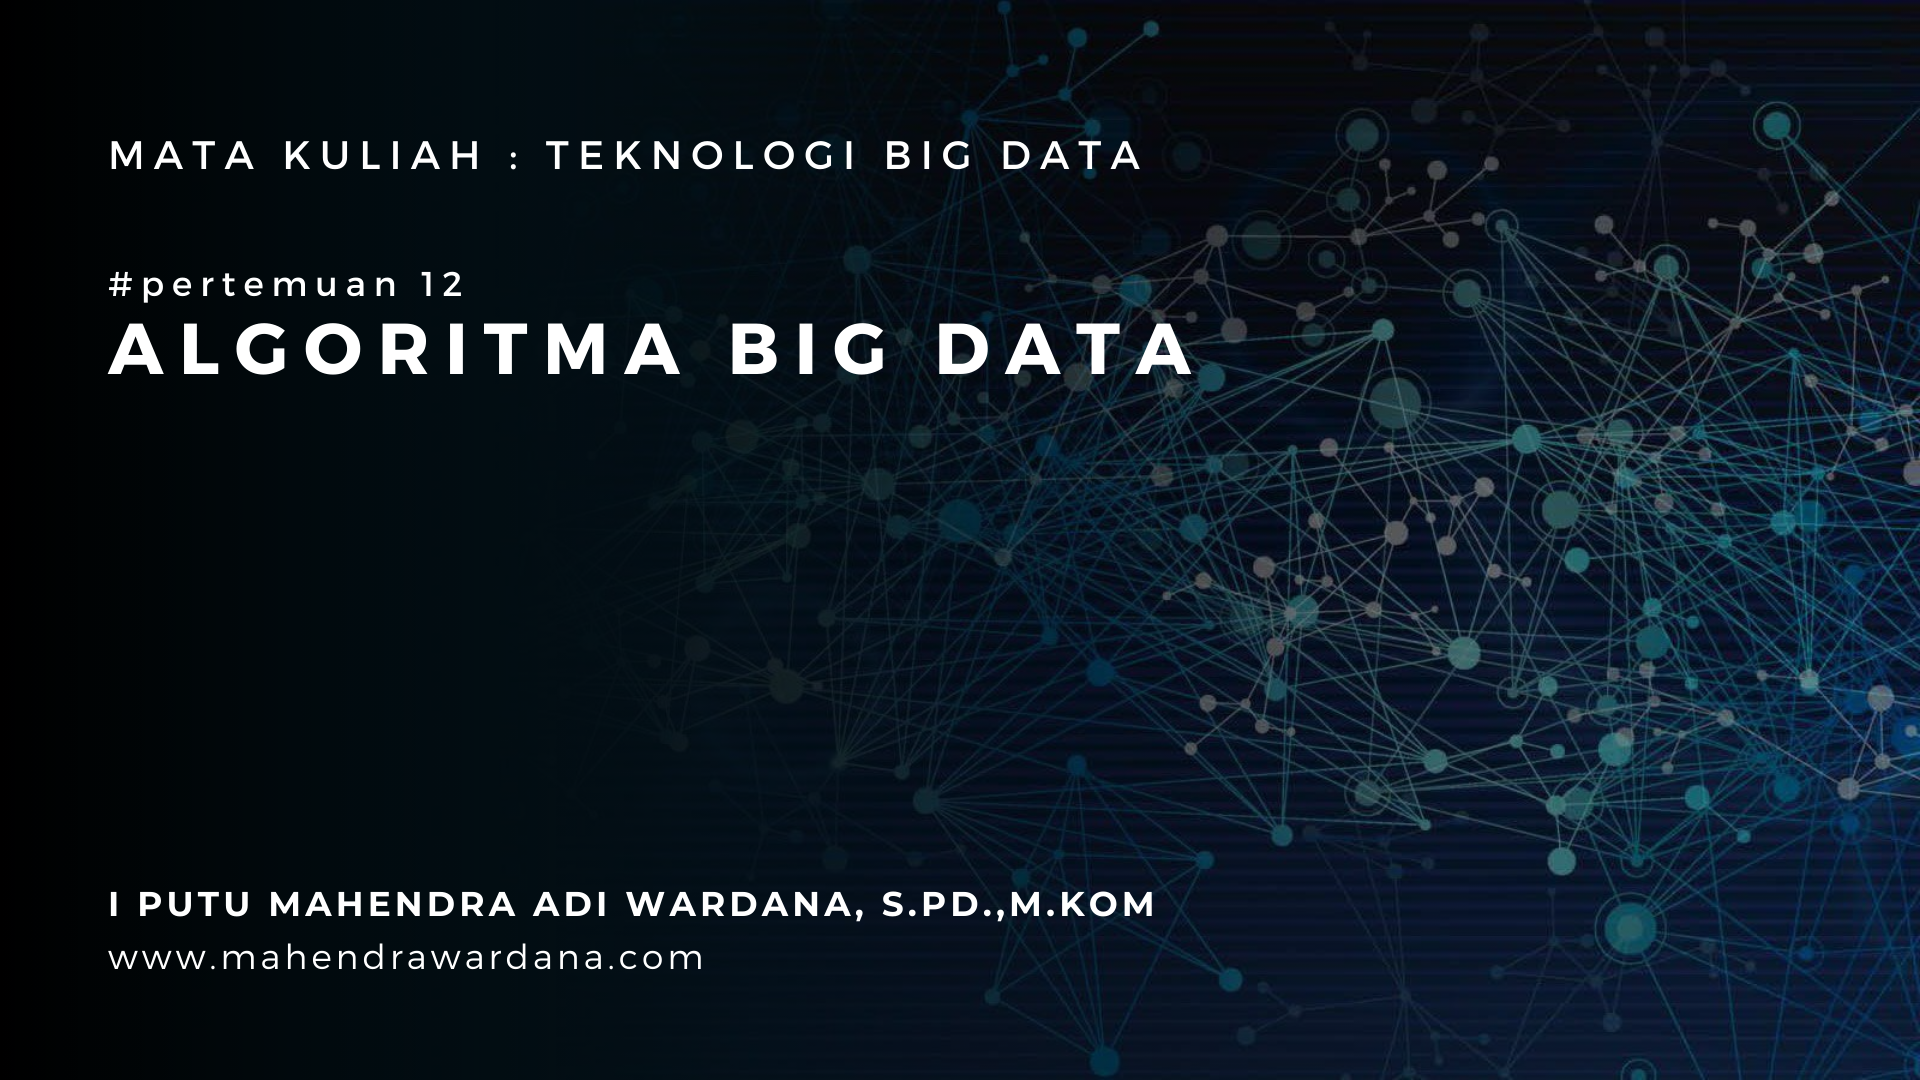 Pertemuan 12 - Algoritma Big Data